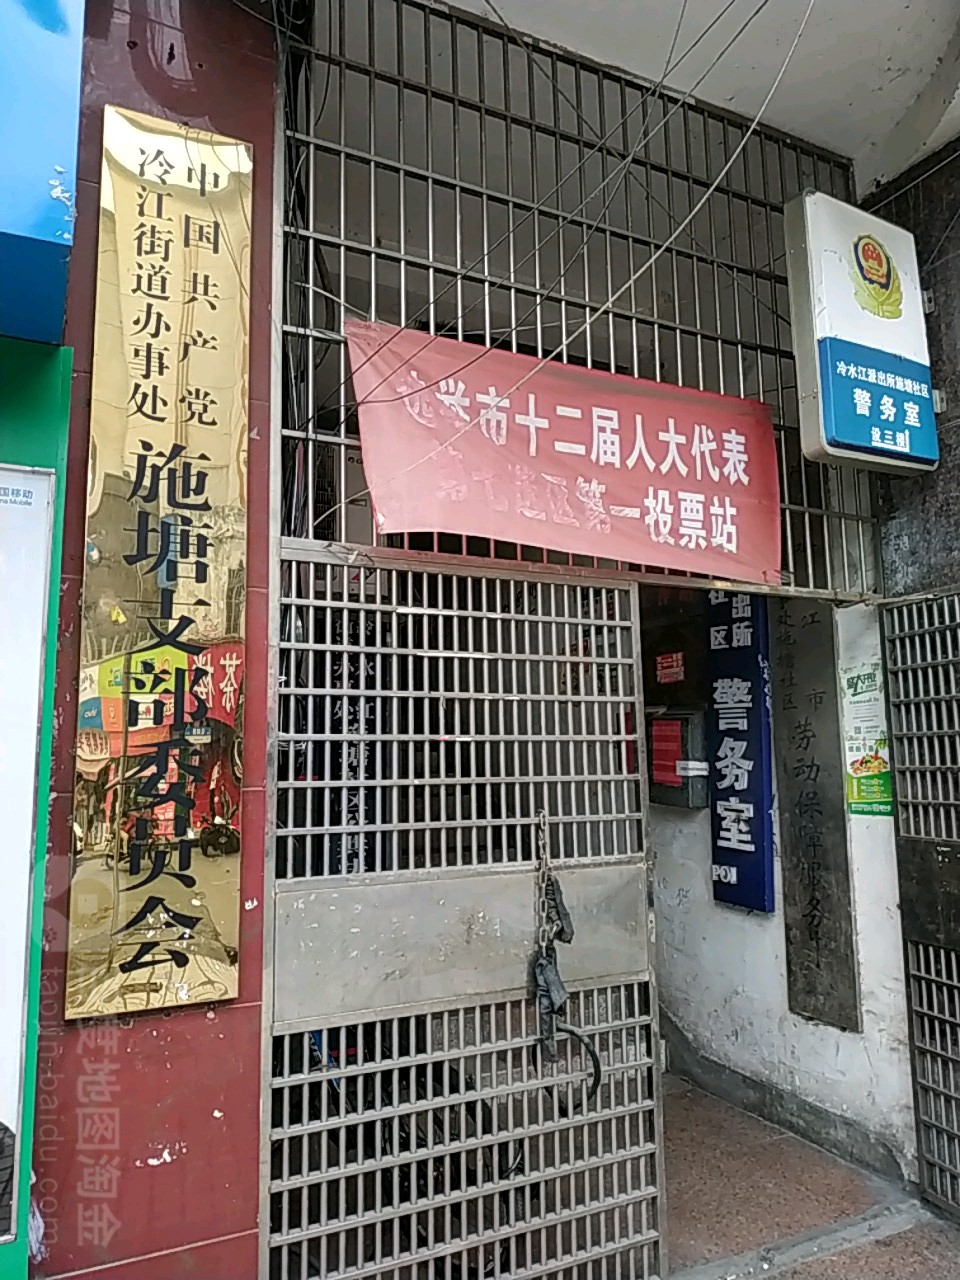 中國共產黨冷水江街道辦事處施塘支部委員會